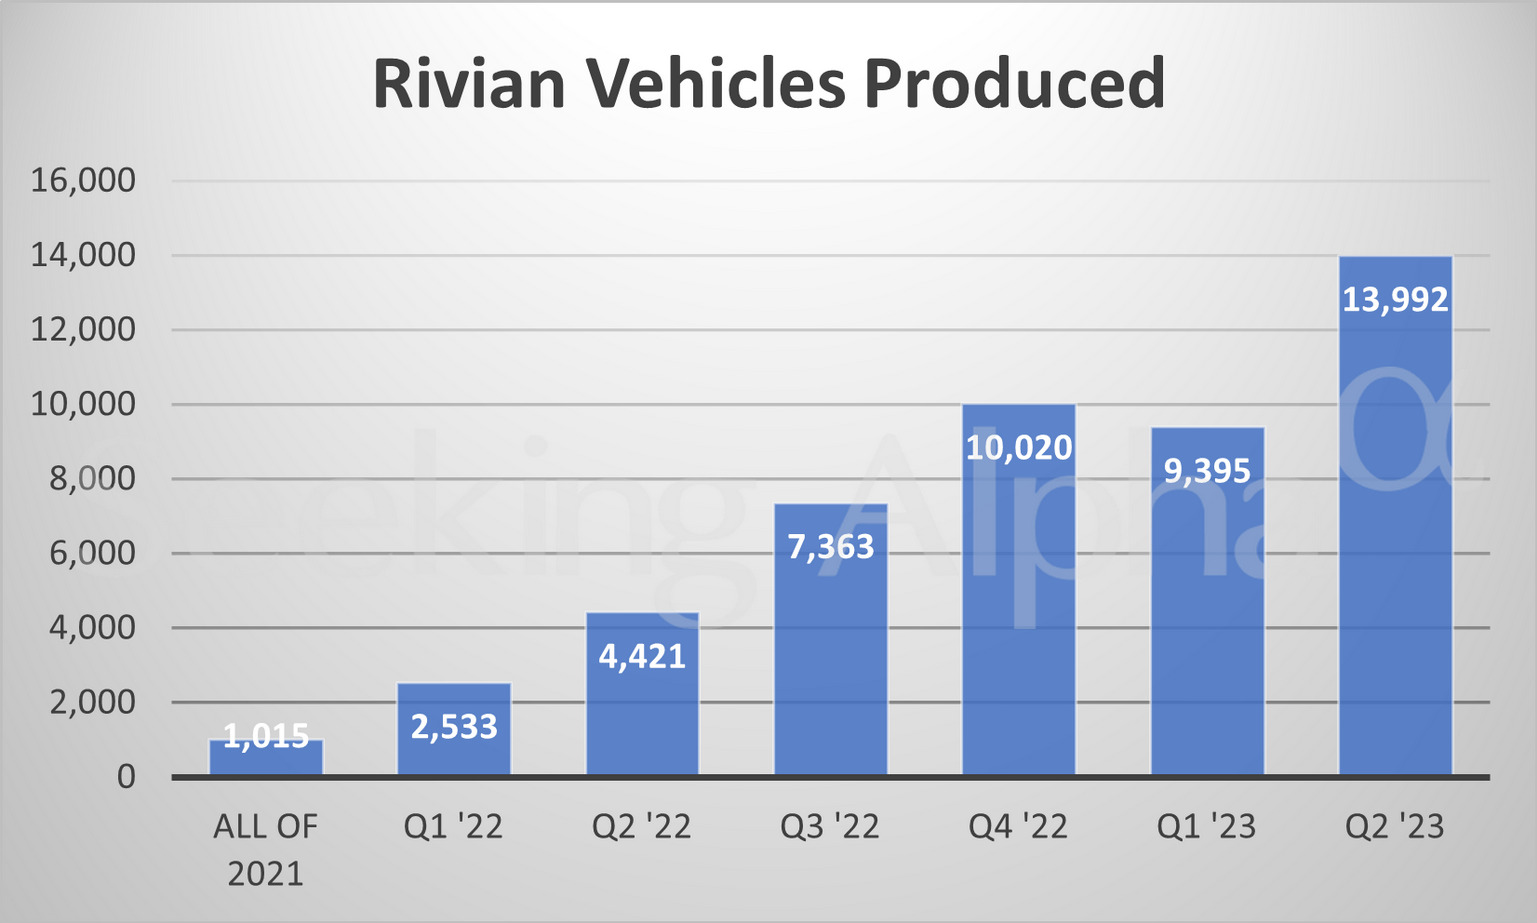 Vyrobených vozidel společností Rivian